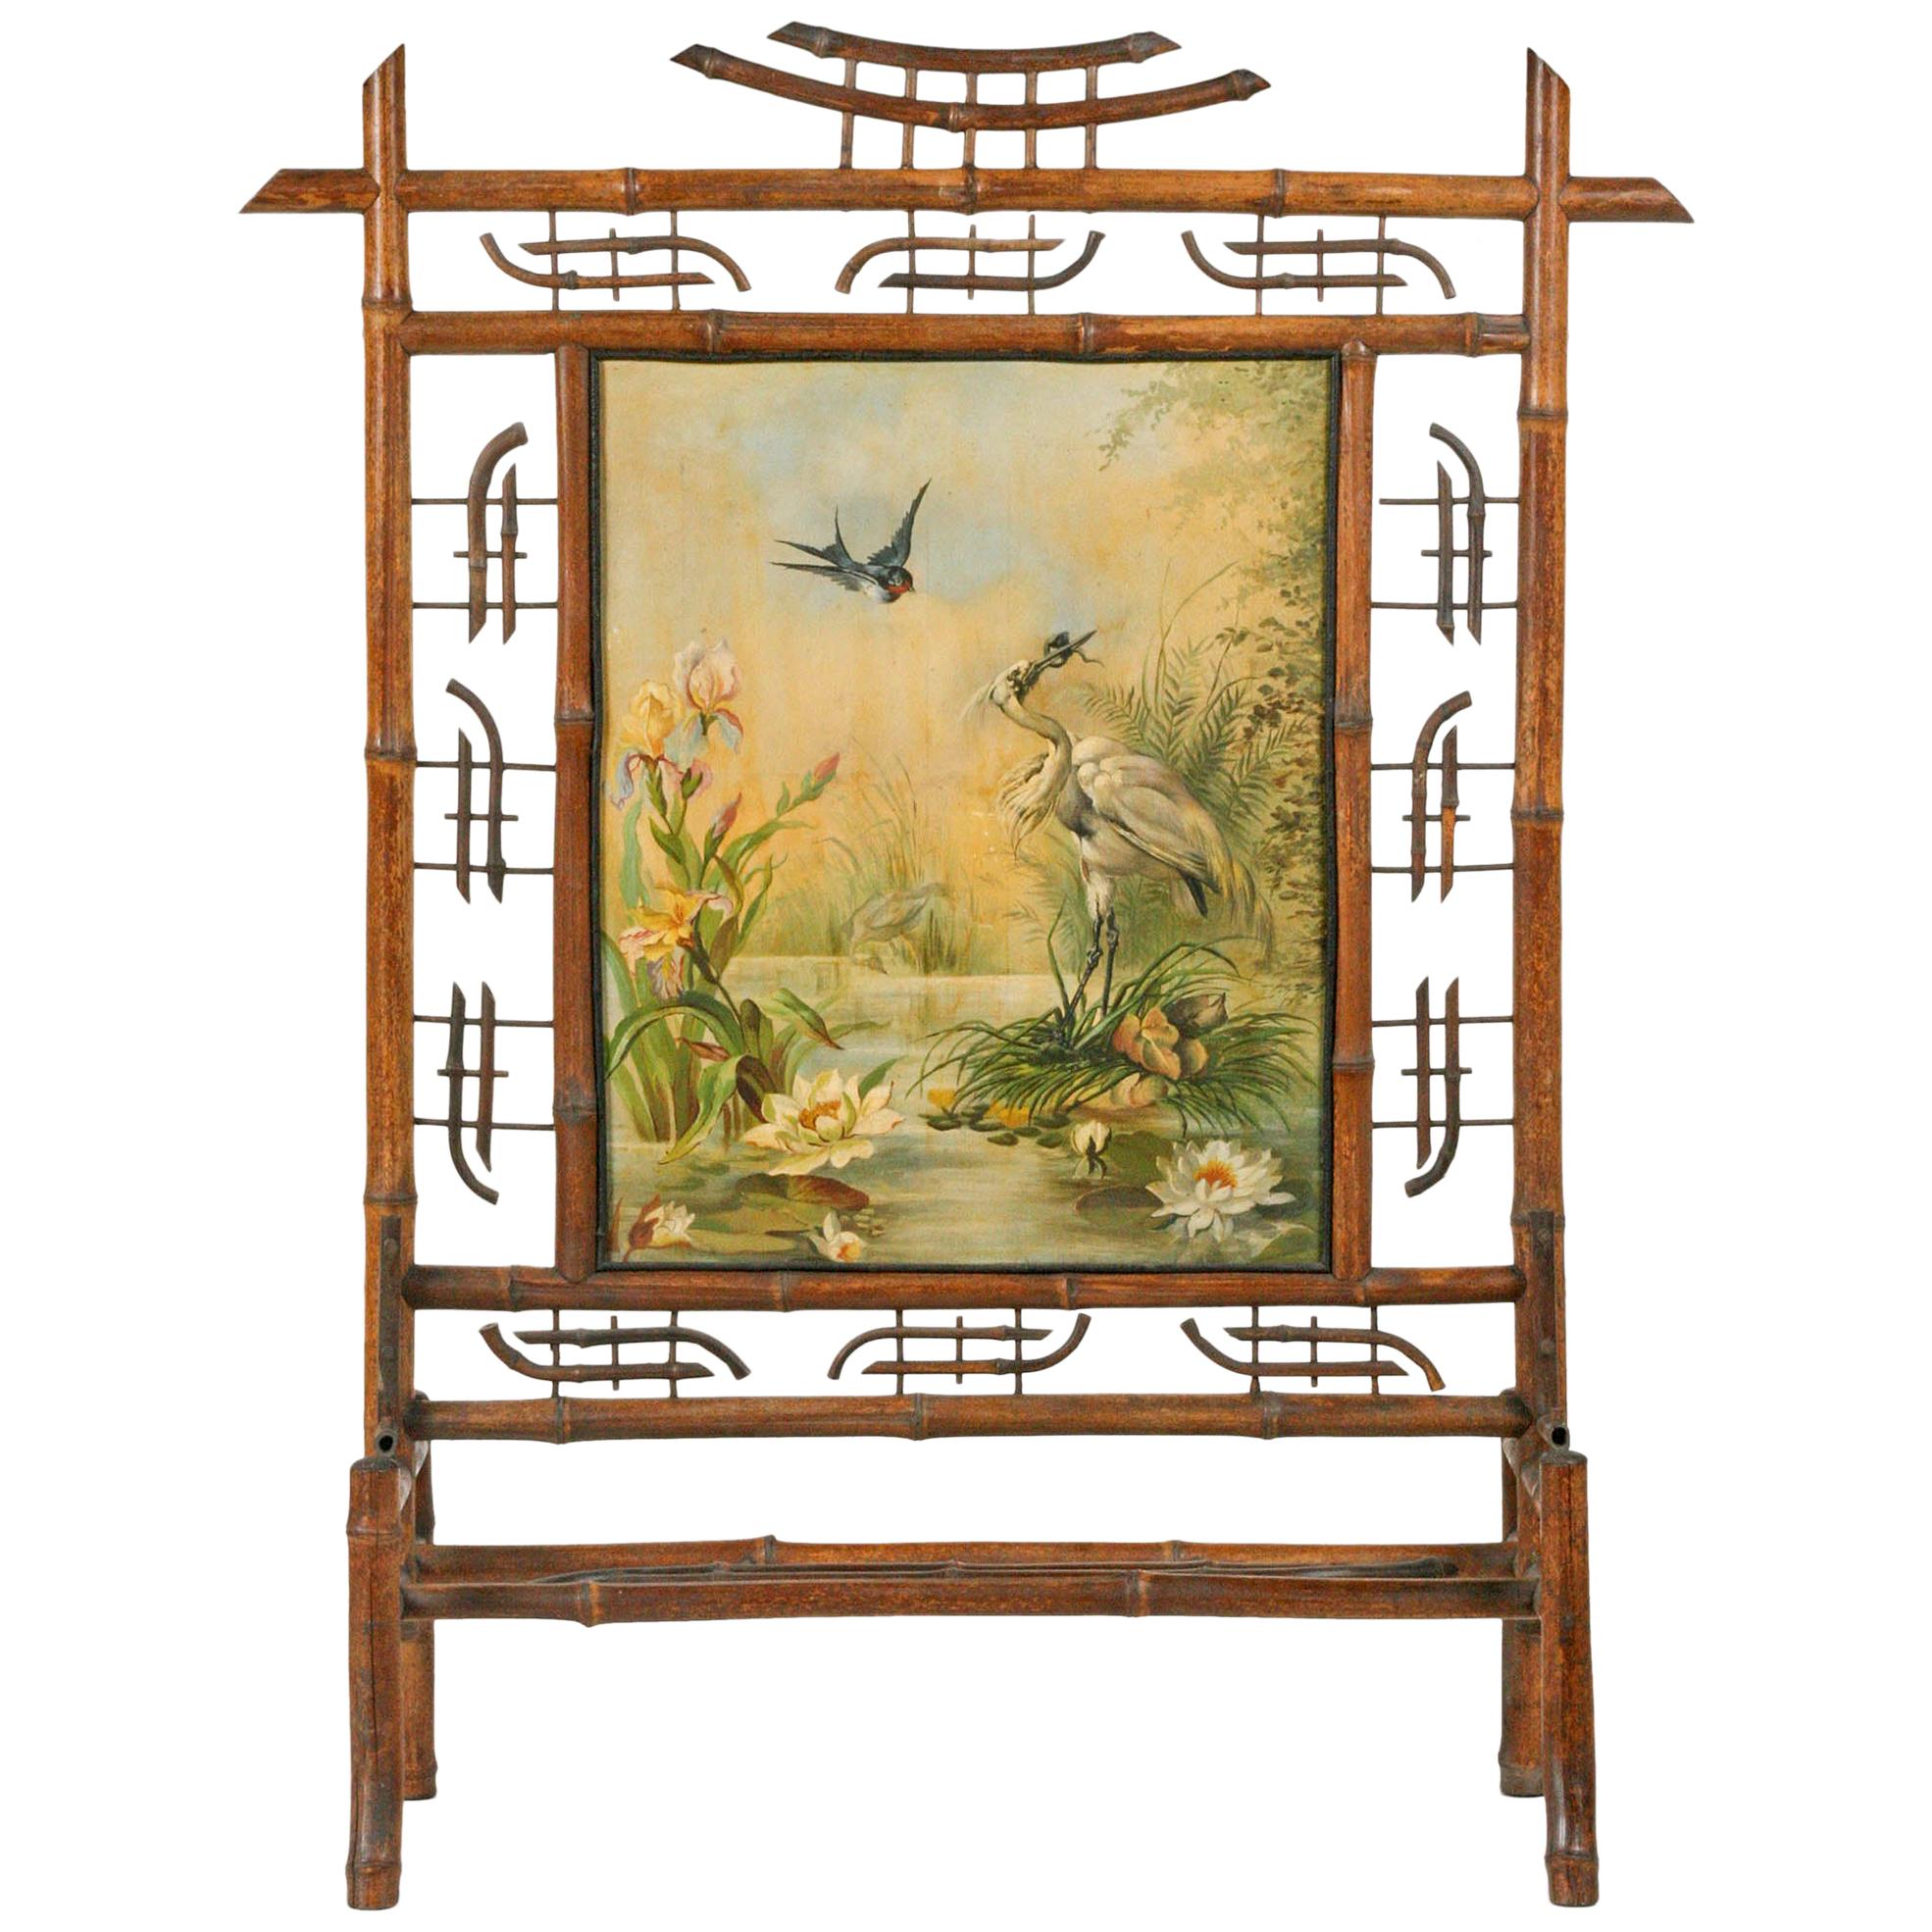 Jugendstil-Kaminschirm aus Bambus, gefertigt, mit Gemälde auf Leinwand aus dem Jahr 1896